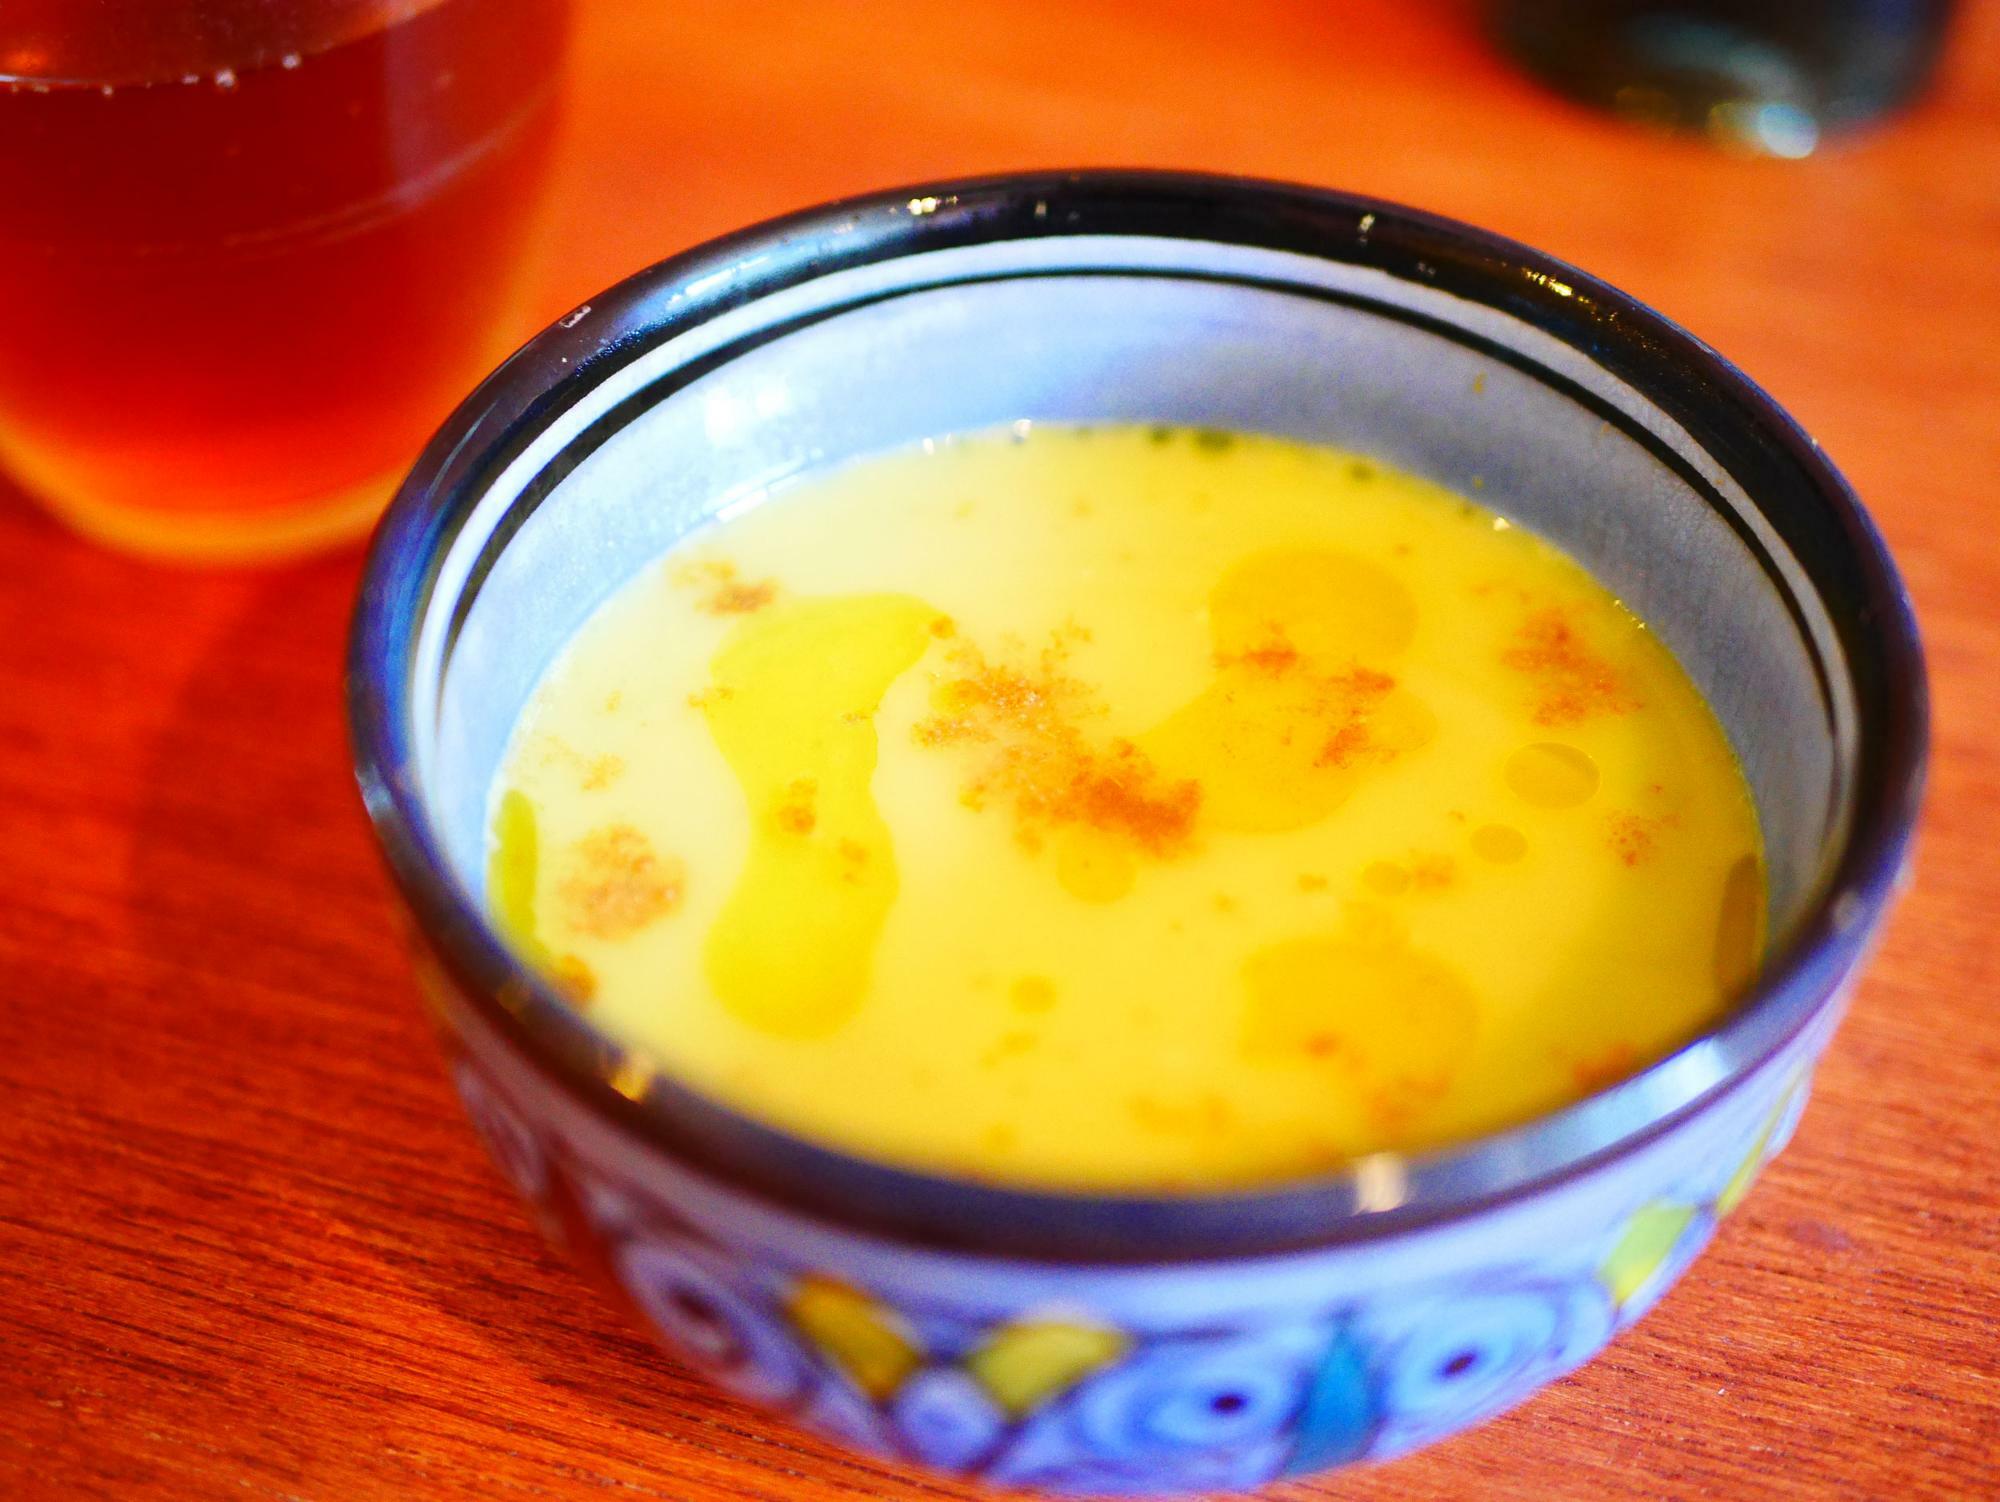 グリーンピースのスープ。のど越しに豆のコクを感じる、美味しい